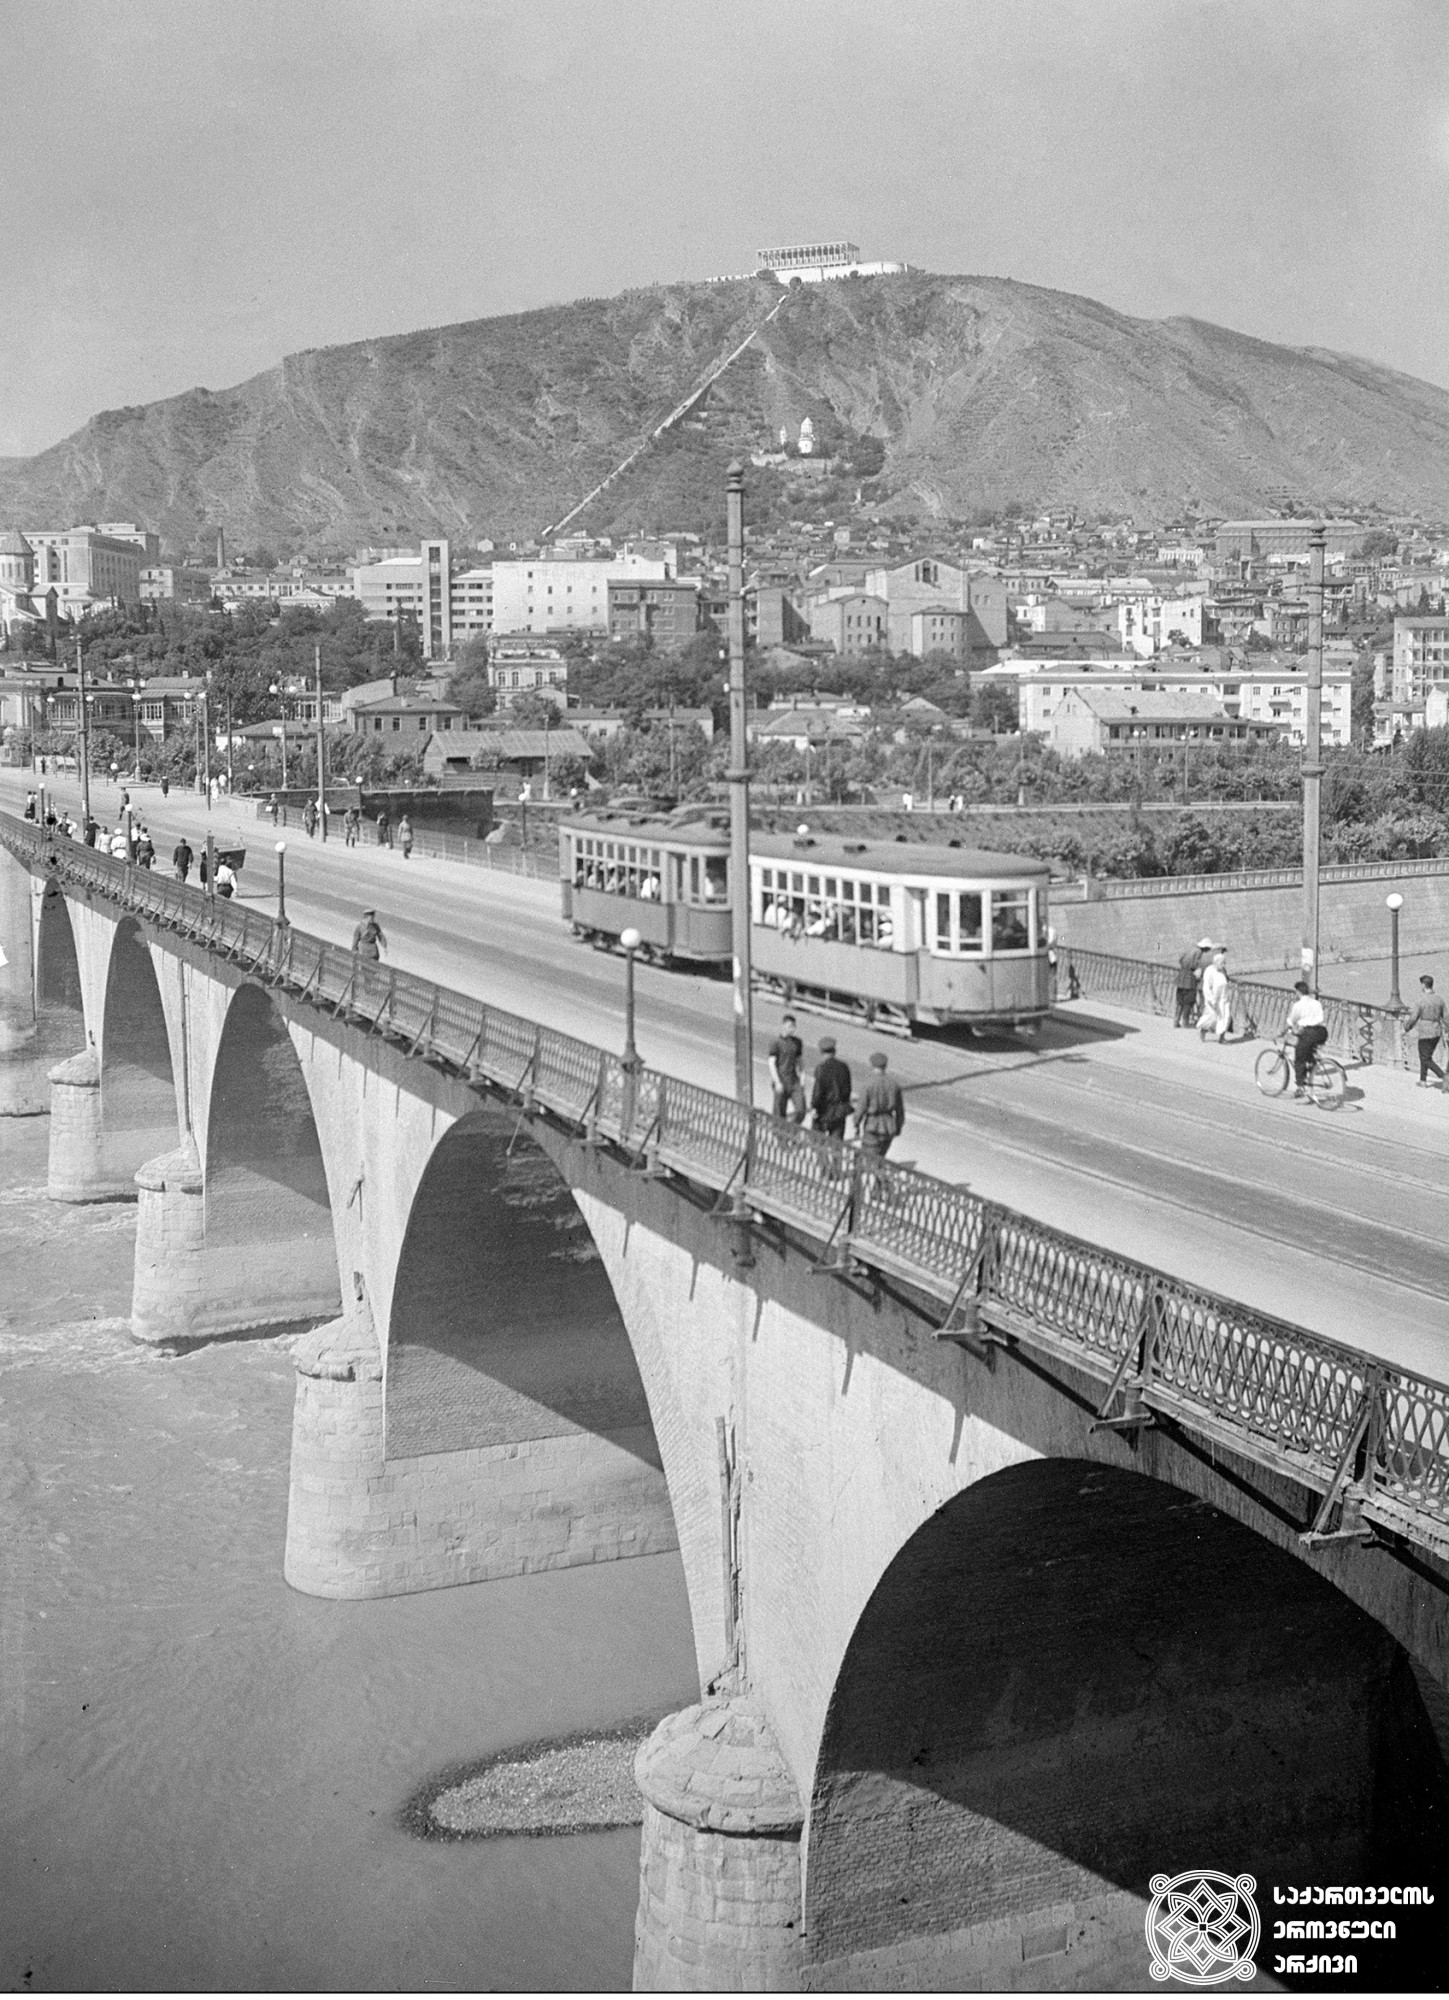 სტალინის სახელობის ახალი სანაპირო და მარქსის (დღევანდელი ზაარბრუკენის) ხიდი. თბილისი. <br>
ფოტო: მიხეილ კვირიკაშვილი. <br>1941.
Stalin New Embankment and Marks (novadaws Zaarbrukeni) Bridge. Tbilisi.<br>
Photo by Mikheil Kvirikashvili. <br>1941